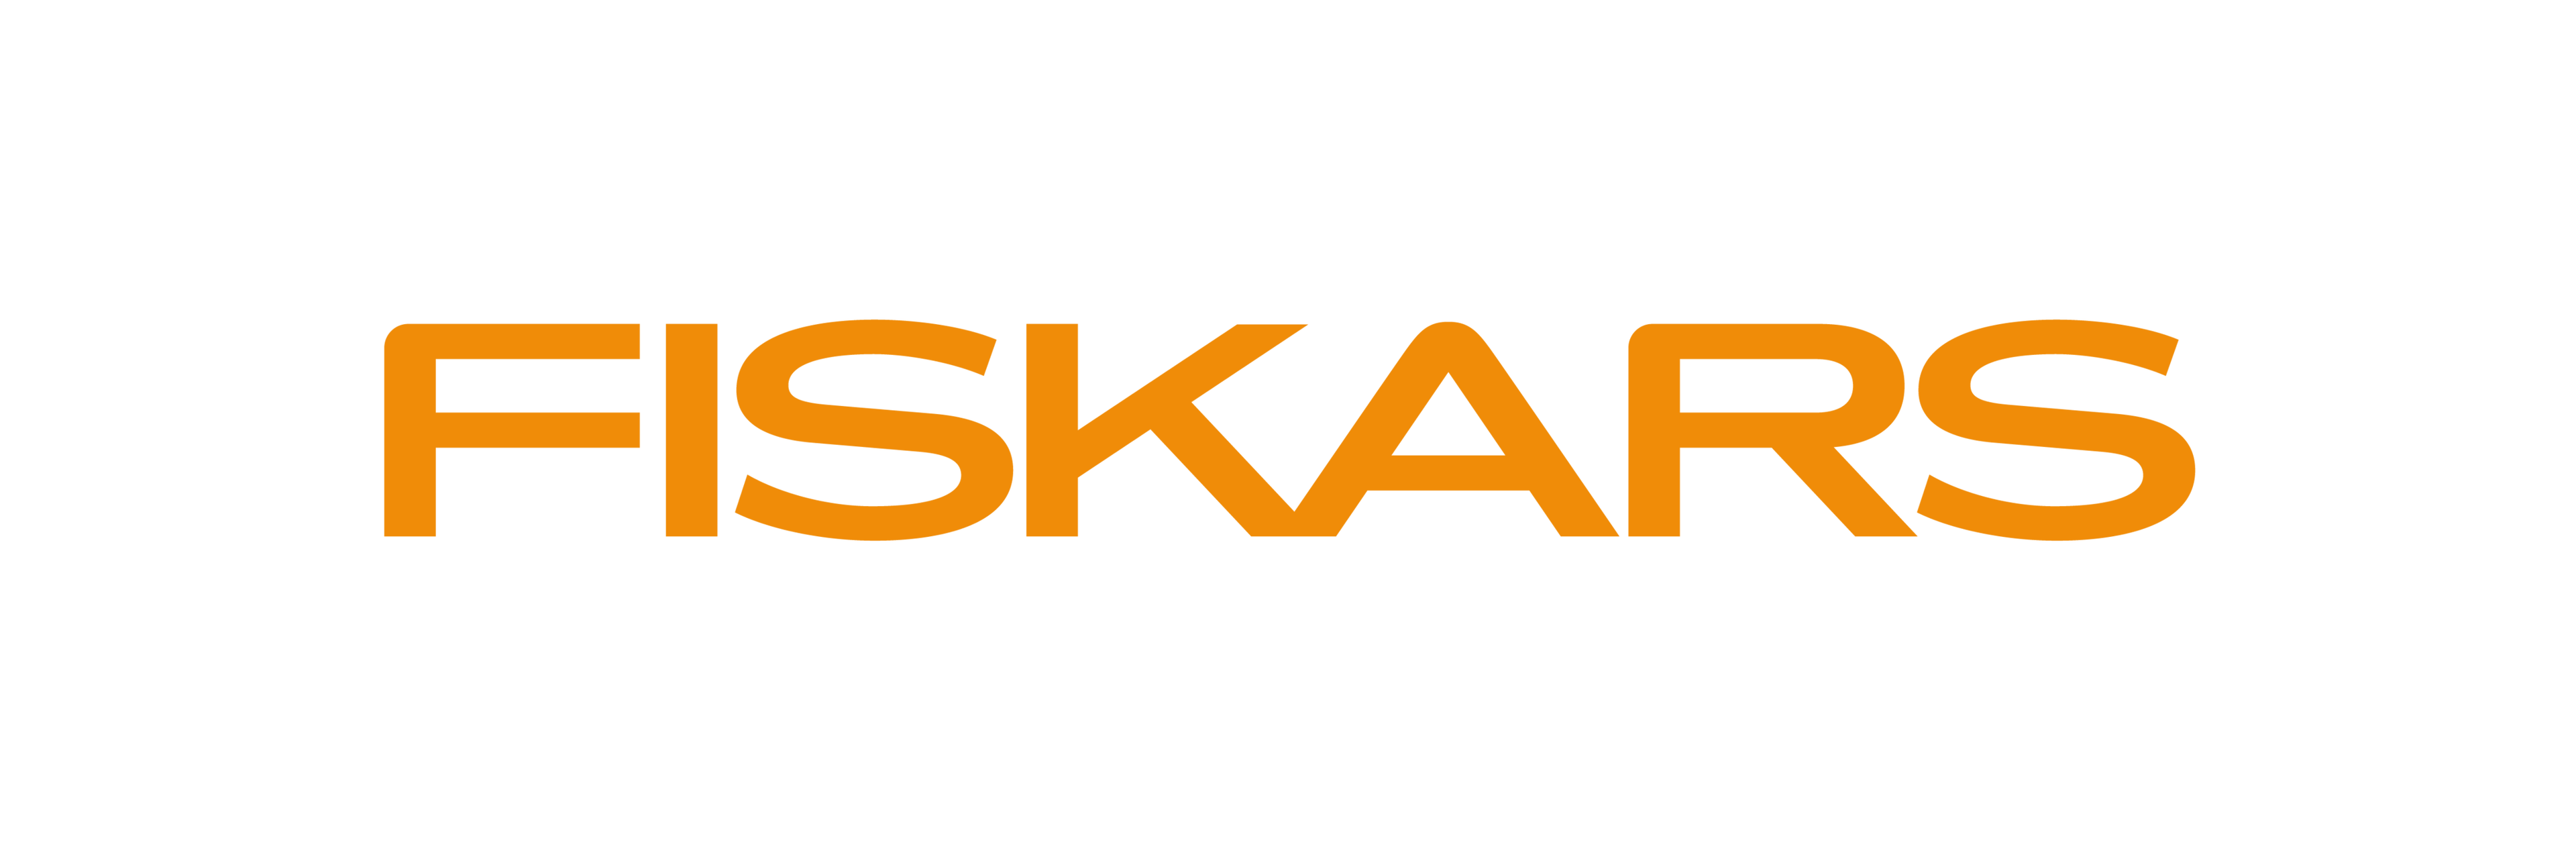 Fiskars logotype